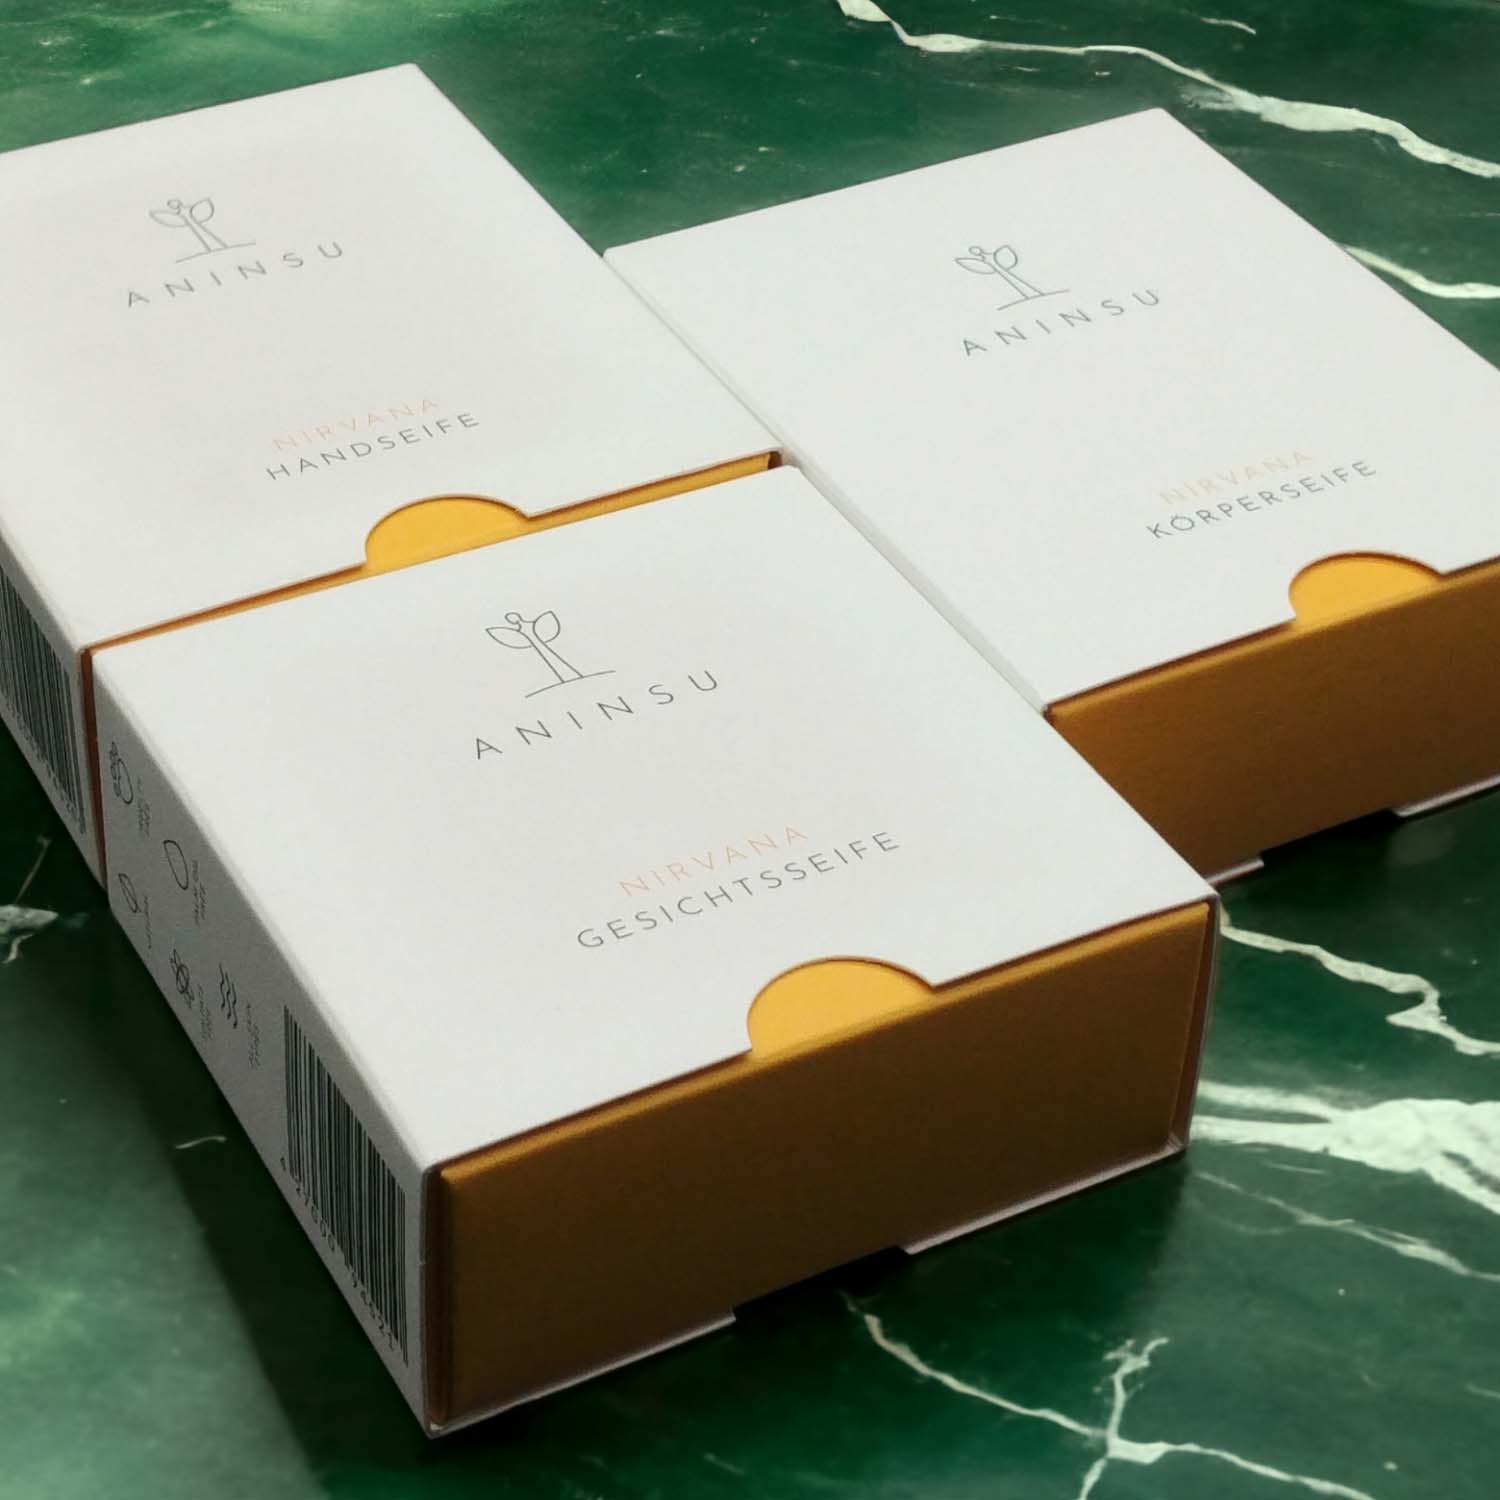 Nirvana Seifentrio von Aninsu: Verpackungen auf grünem Marmor liegend